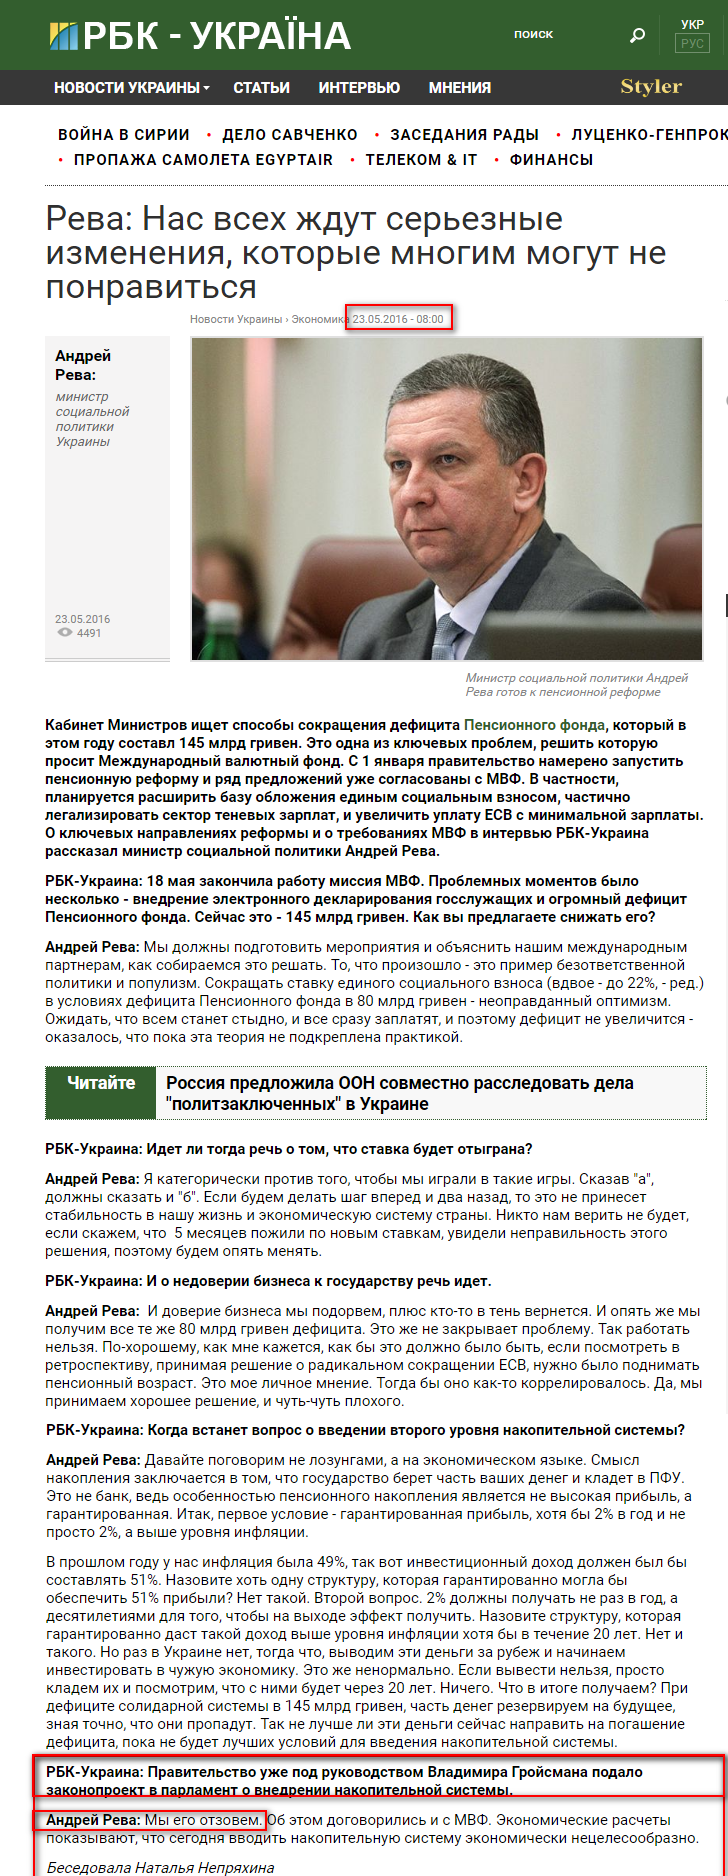 https://www.rbc.ua/rus/interview/reva-nas-zhdut-sereznye-izmeneniya-kotorye-1463936528.html